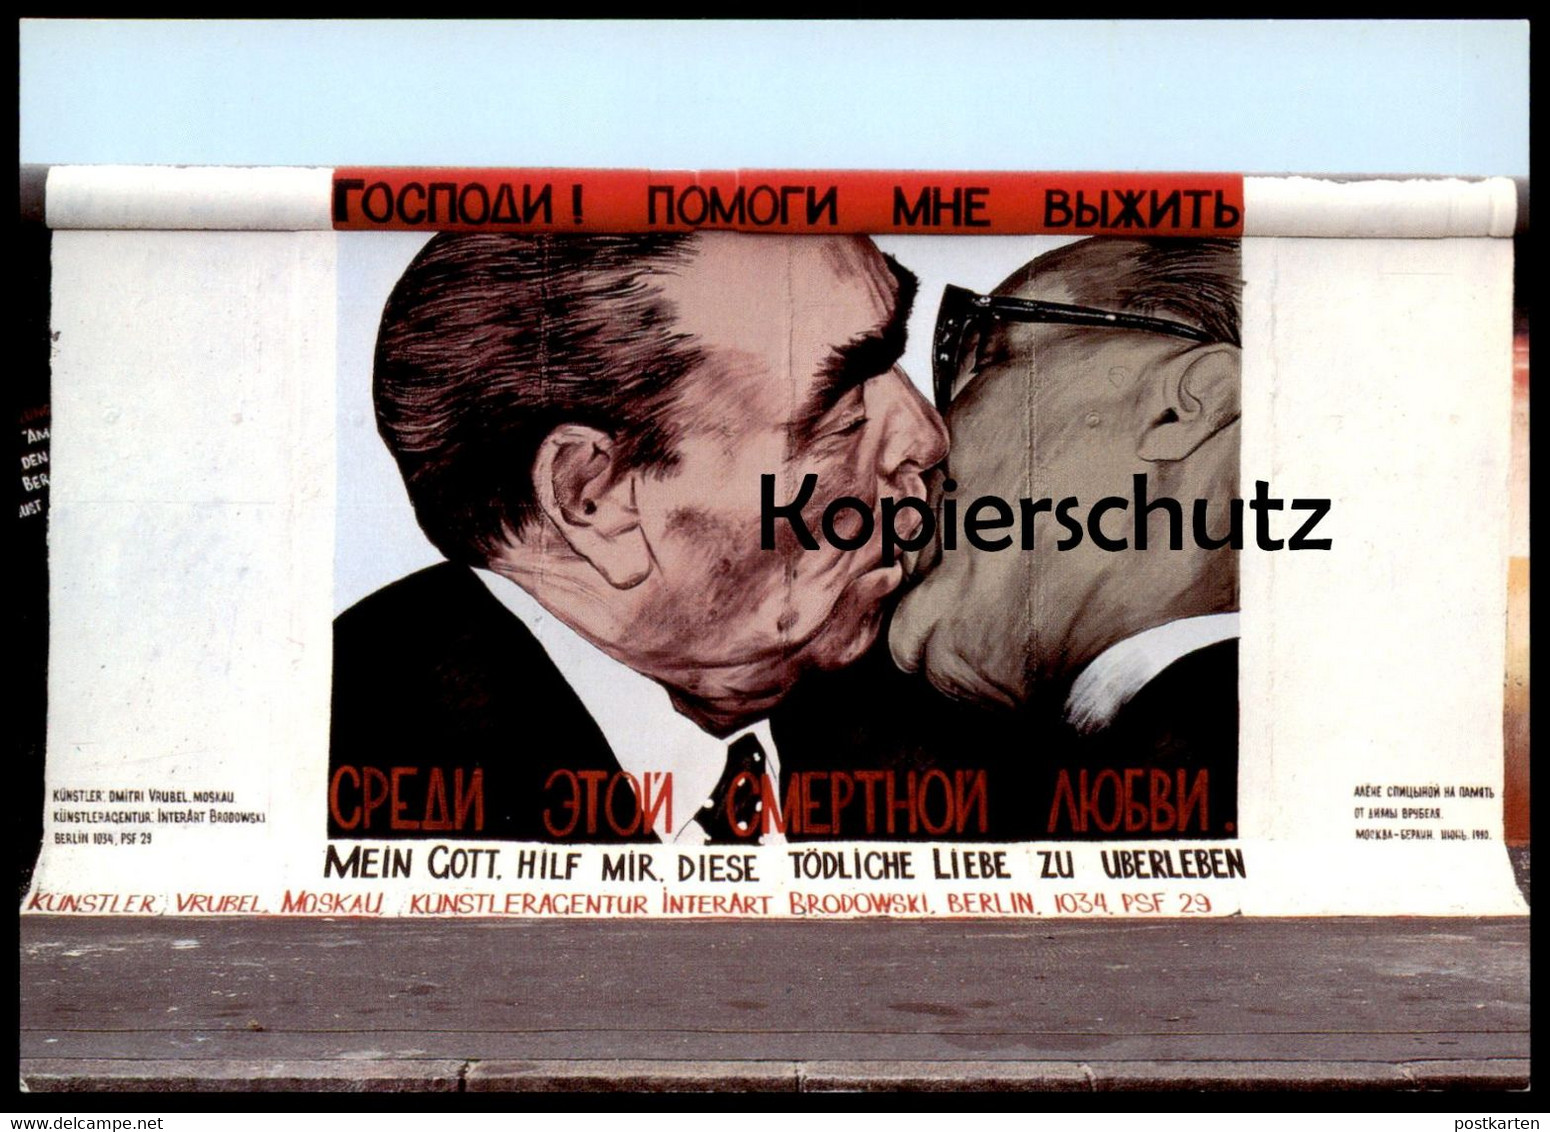 ÄLTERE POSTKARTE BERLIN DMITRI VRUBEL MEIN GOTT HILF MIR DIESE TÖDLICHE LIEBE ZU ÜBERLEBEN BRUDERKUSS HONECKER BRESCHNEW - Berliner Mauer